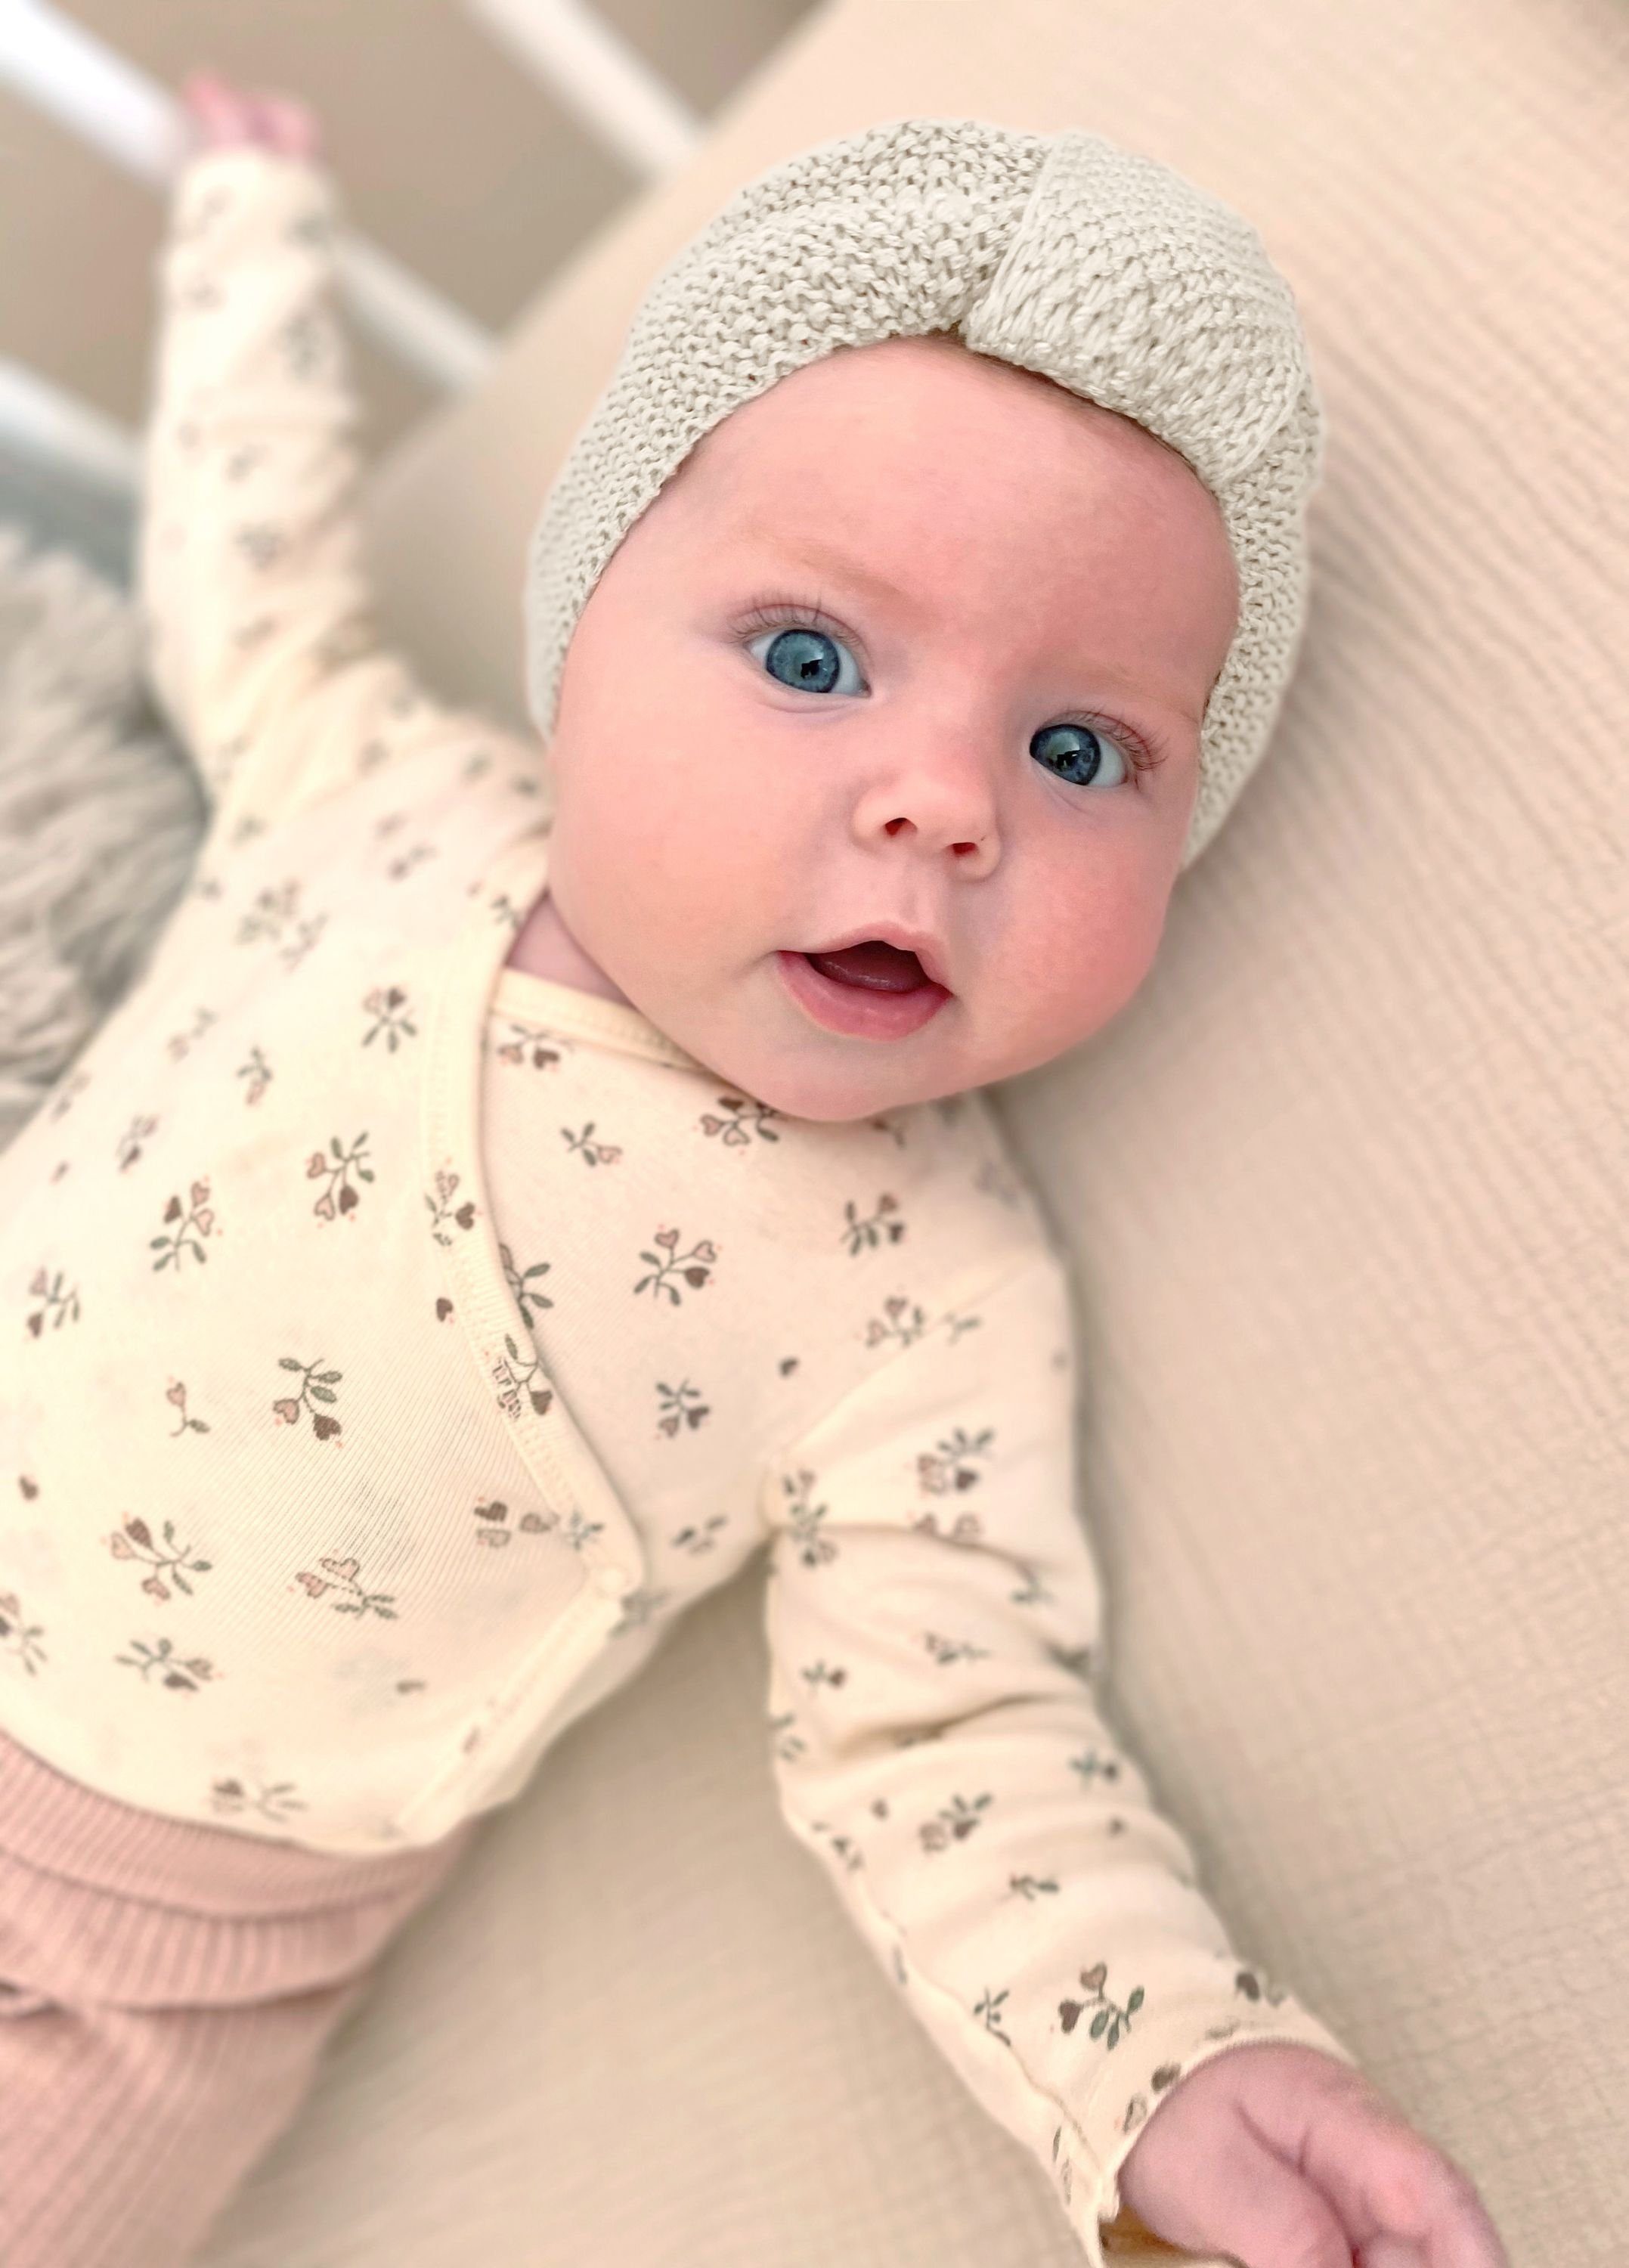 Nordic Coast Company Weiß Strickmütze Baumwolle Mädchen - Geschenk ab 100% Turbanmütze für Baby ideal Neugeborene Natur Turban Geburt als